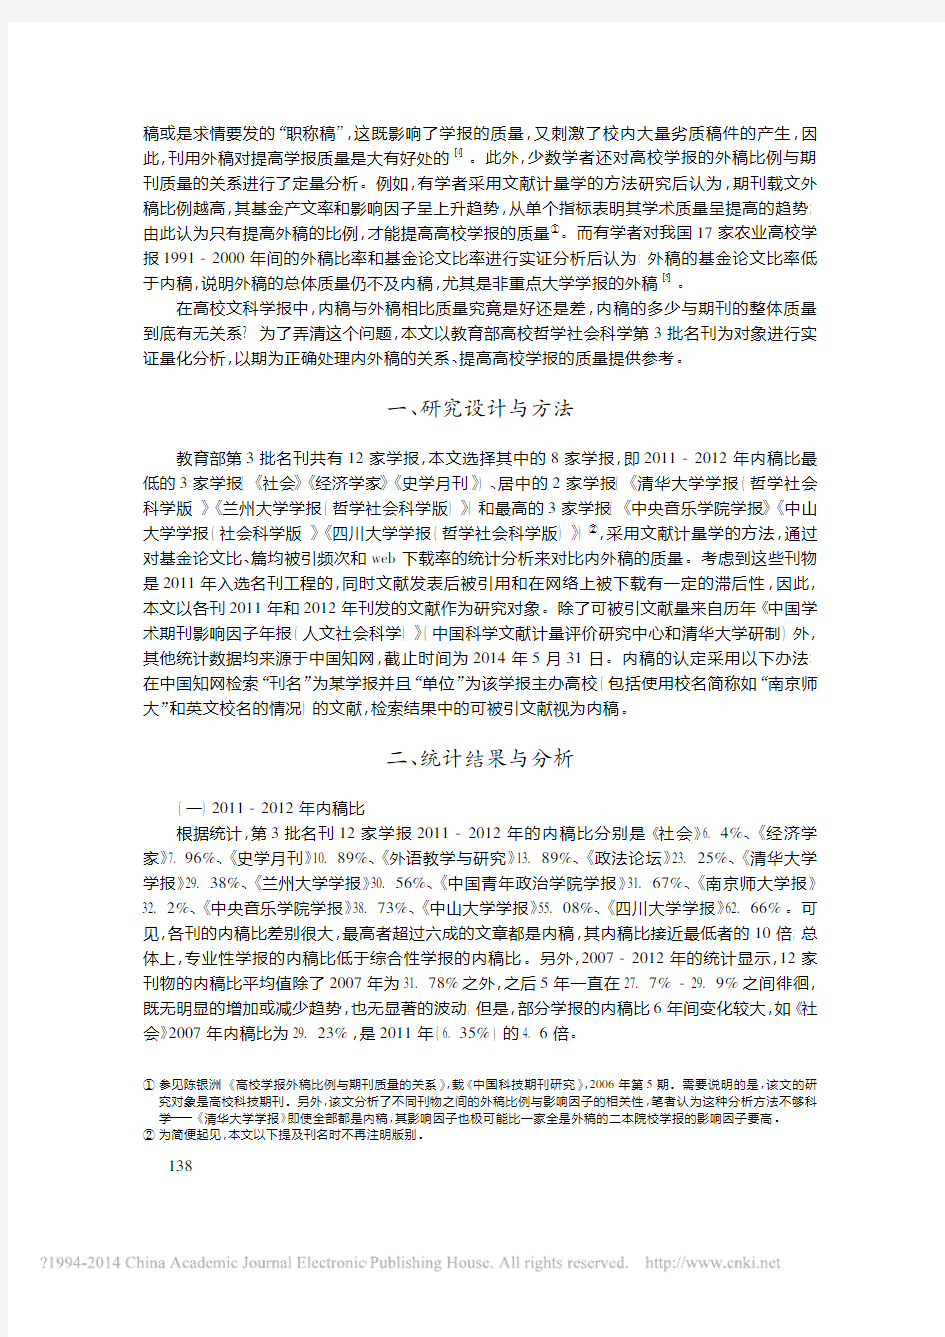 高校文科学报内外稿质量初探以教育部第3批名刊为例刘向宁